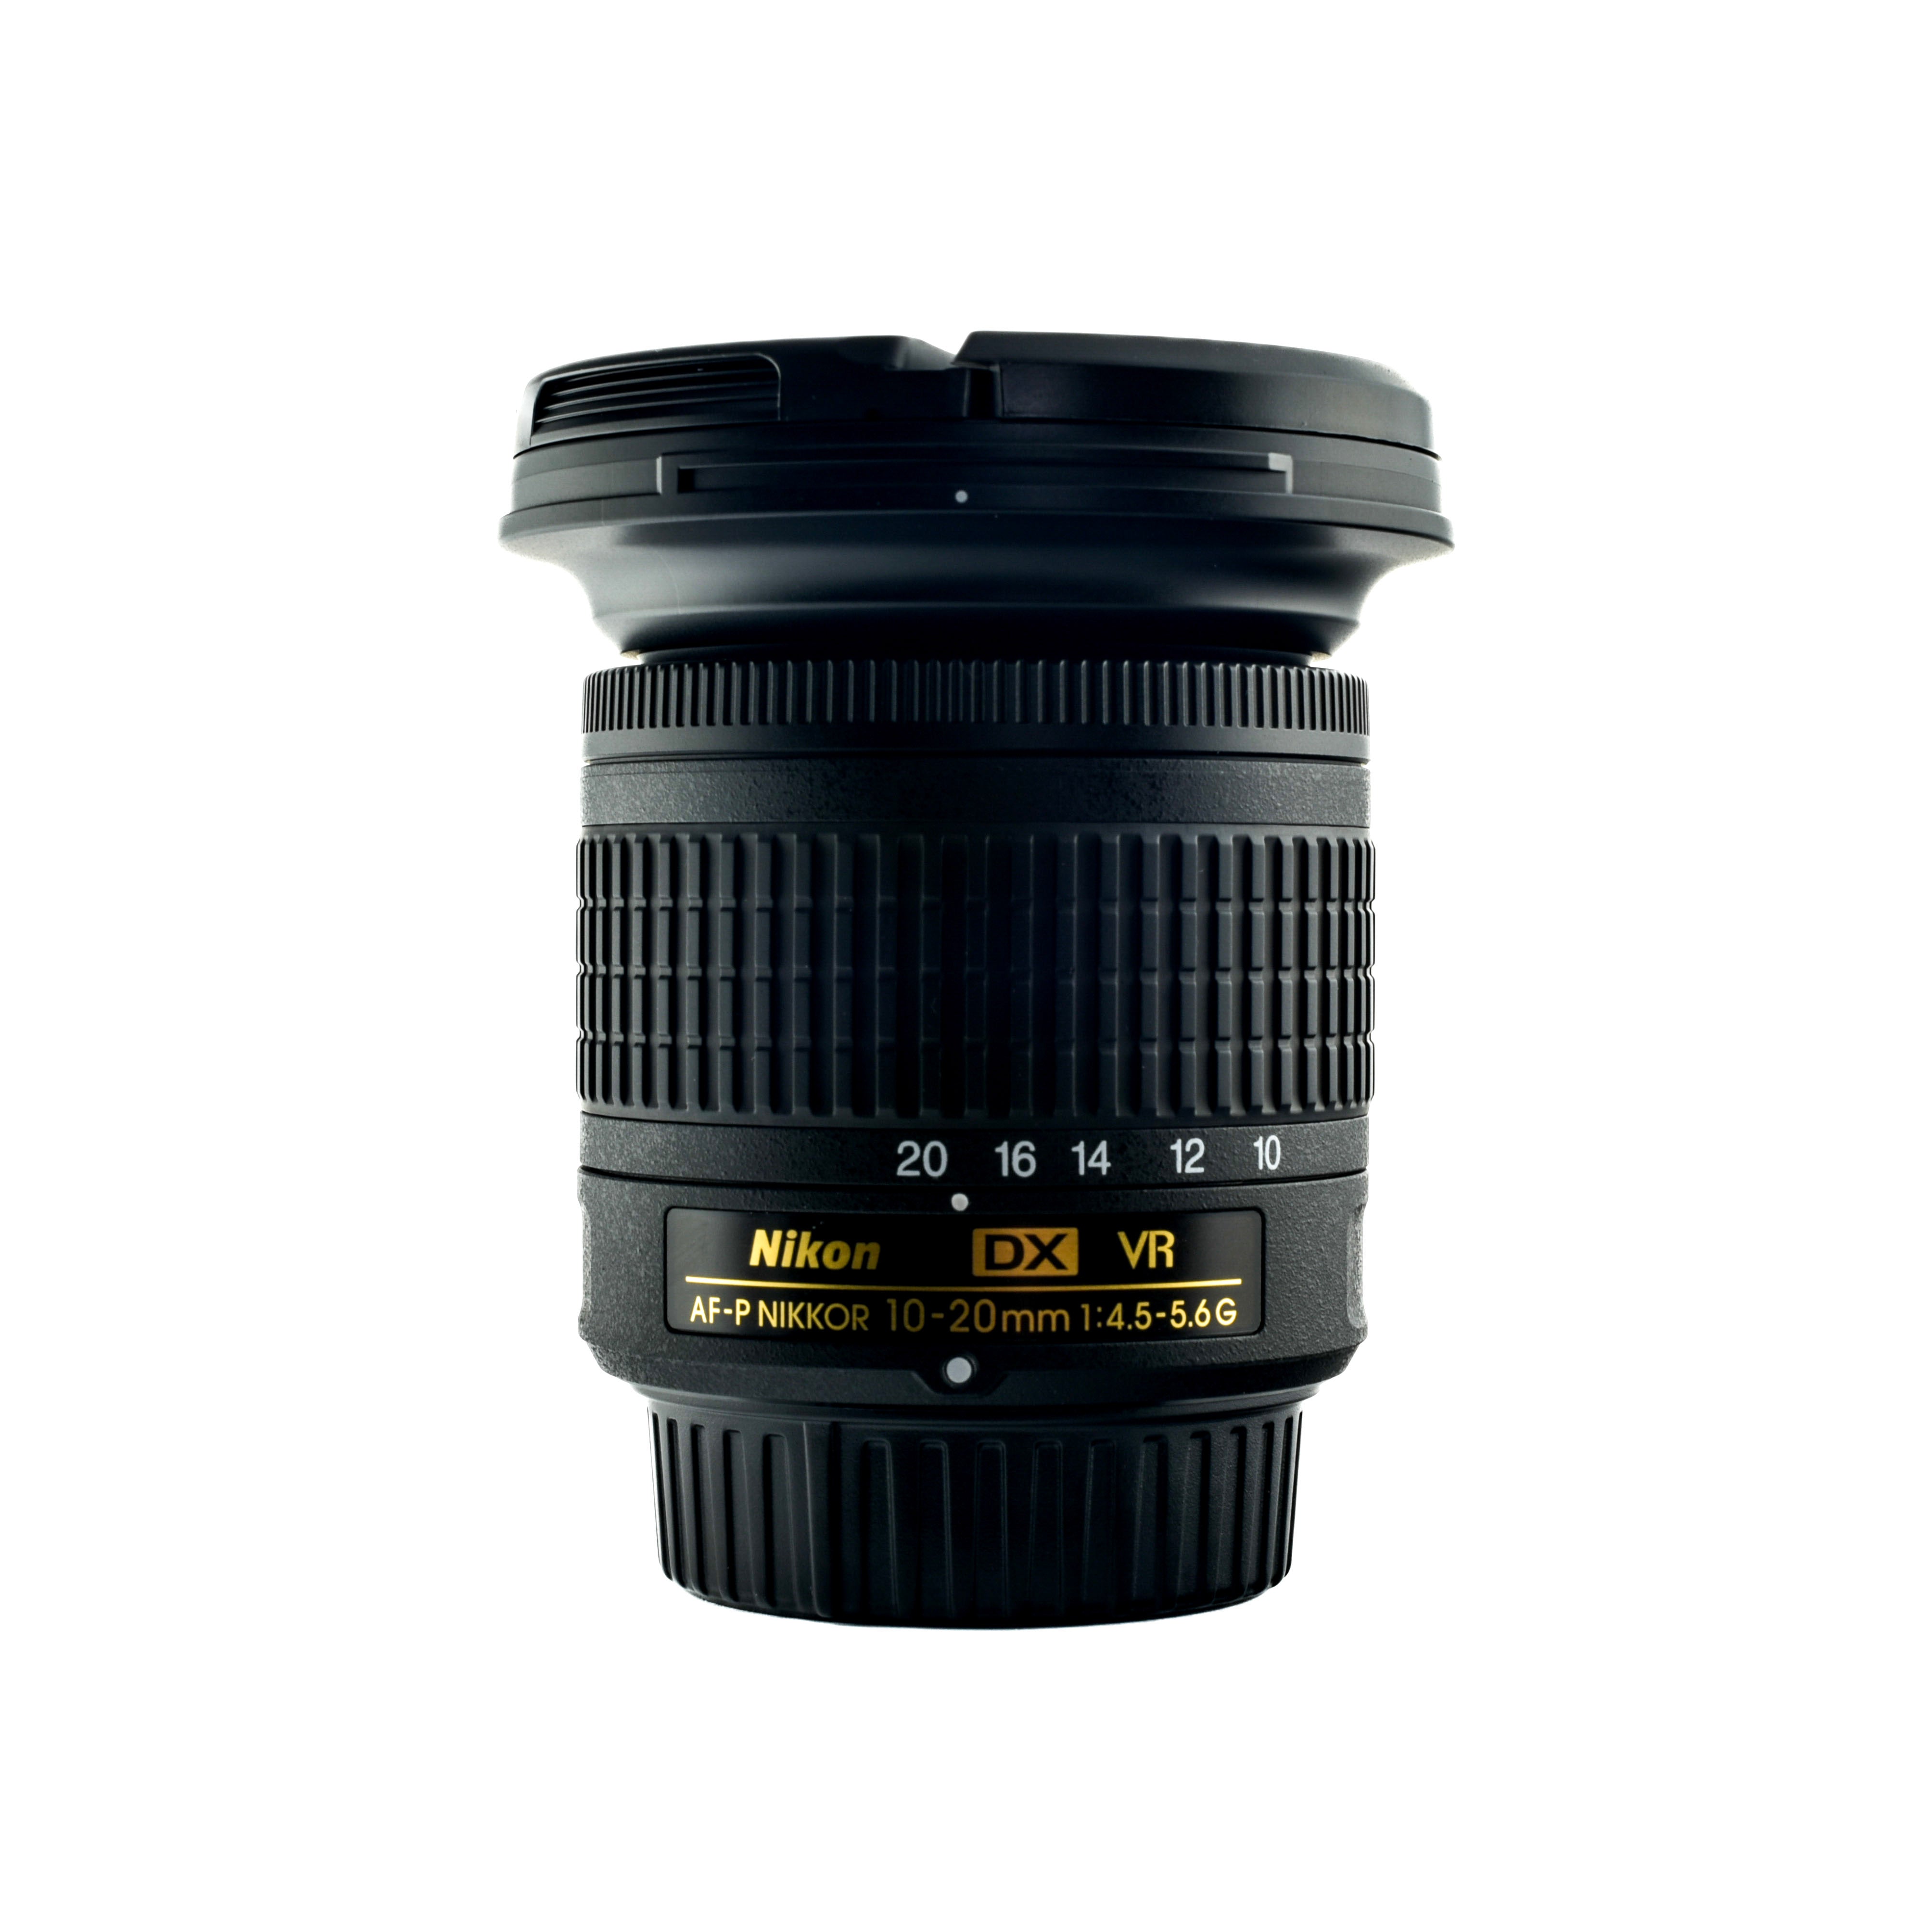 Nikkor 10-20mm  Af-P DX f/4.5-5.6G VR lens